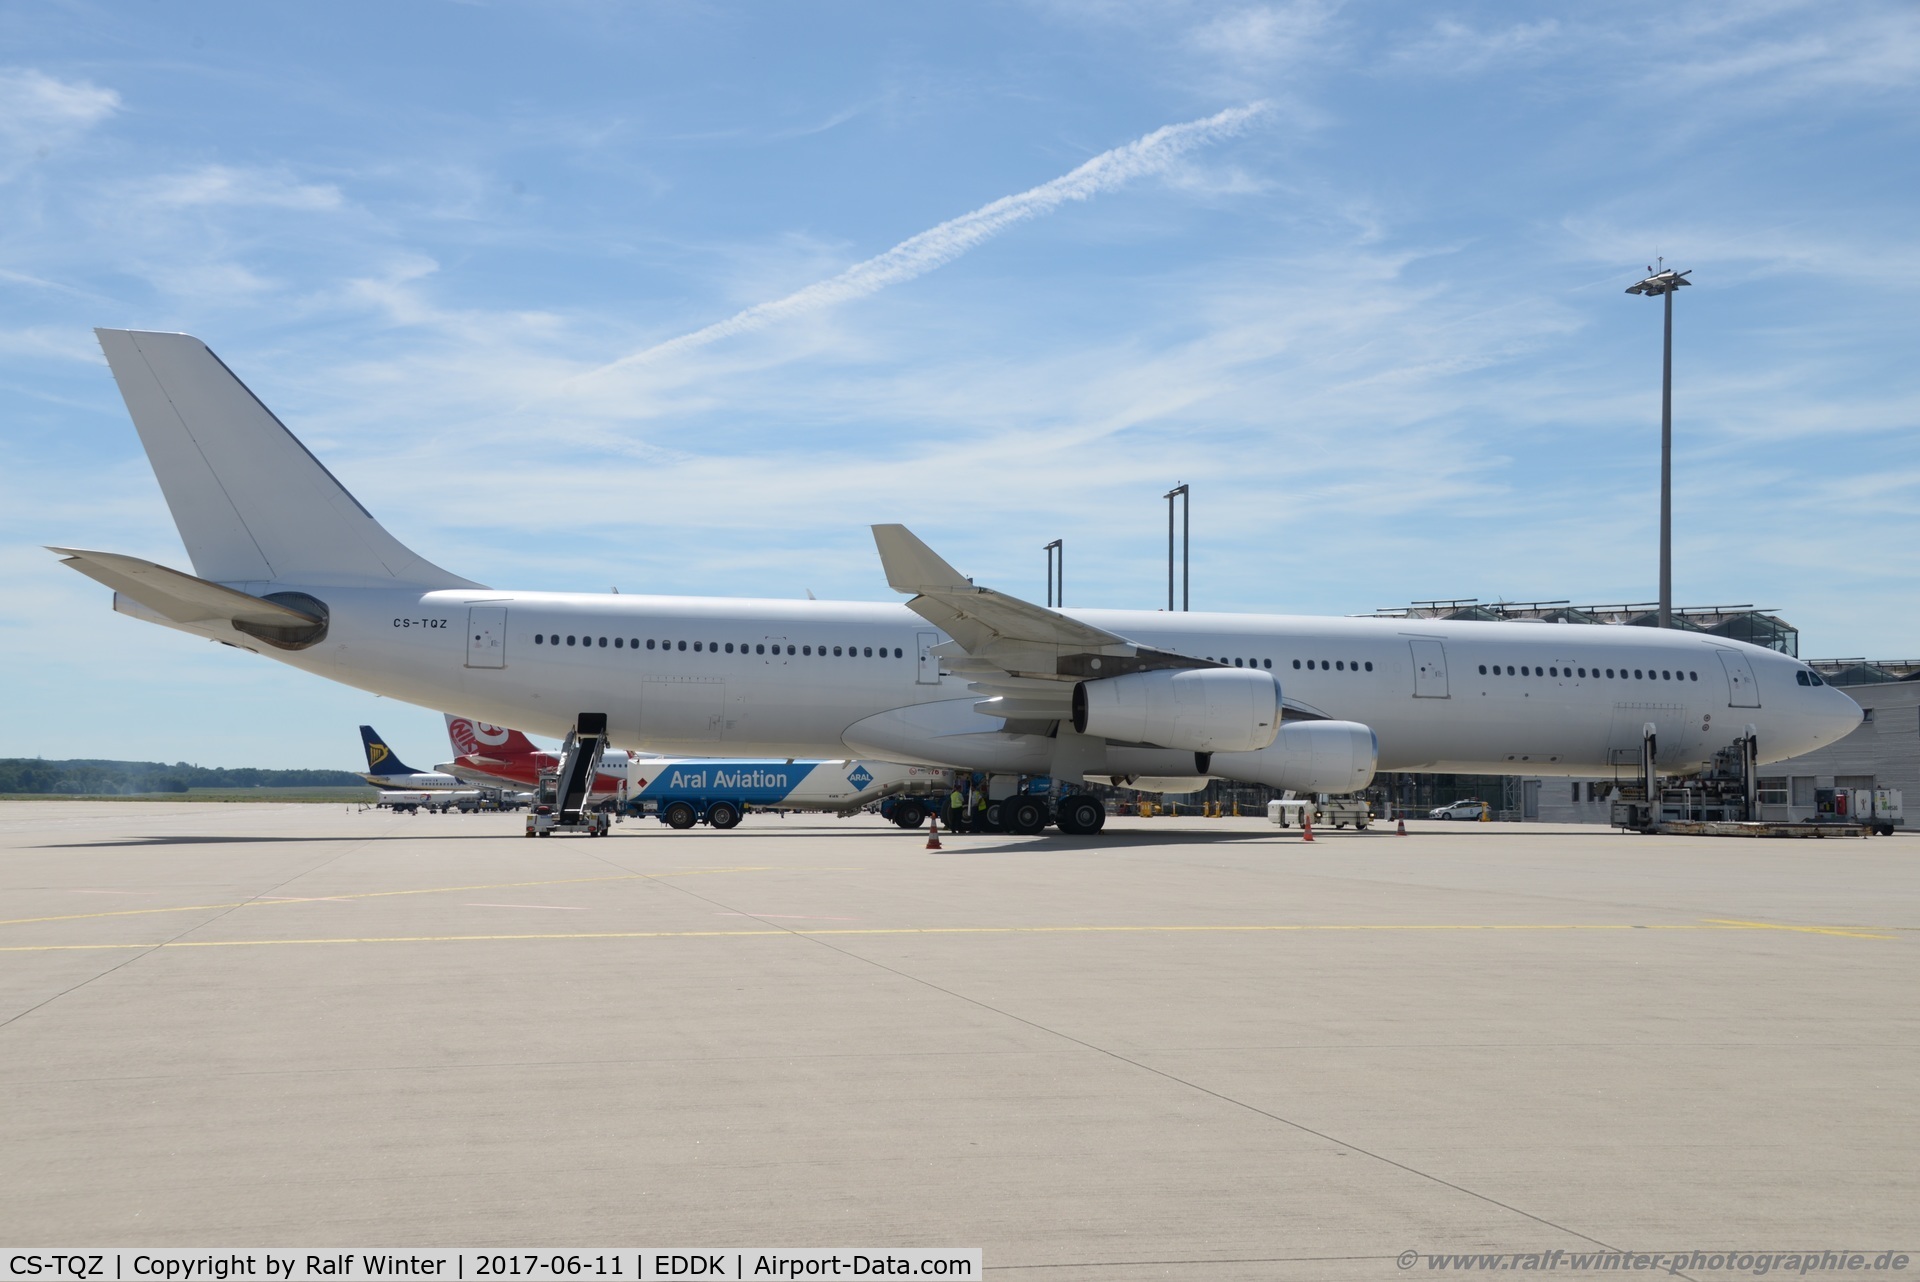 CS-TQZ, 1997 Airbus A340-313X C/N 202, Airbus A340-313 - 5K HFY Hi Fly - 202 - CS-TQZ - 11.06.2017 - CGN